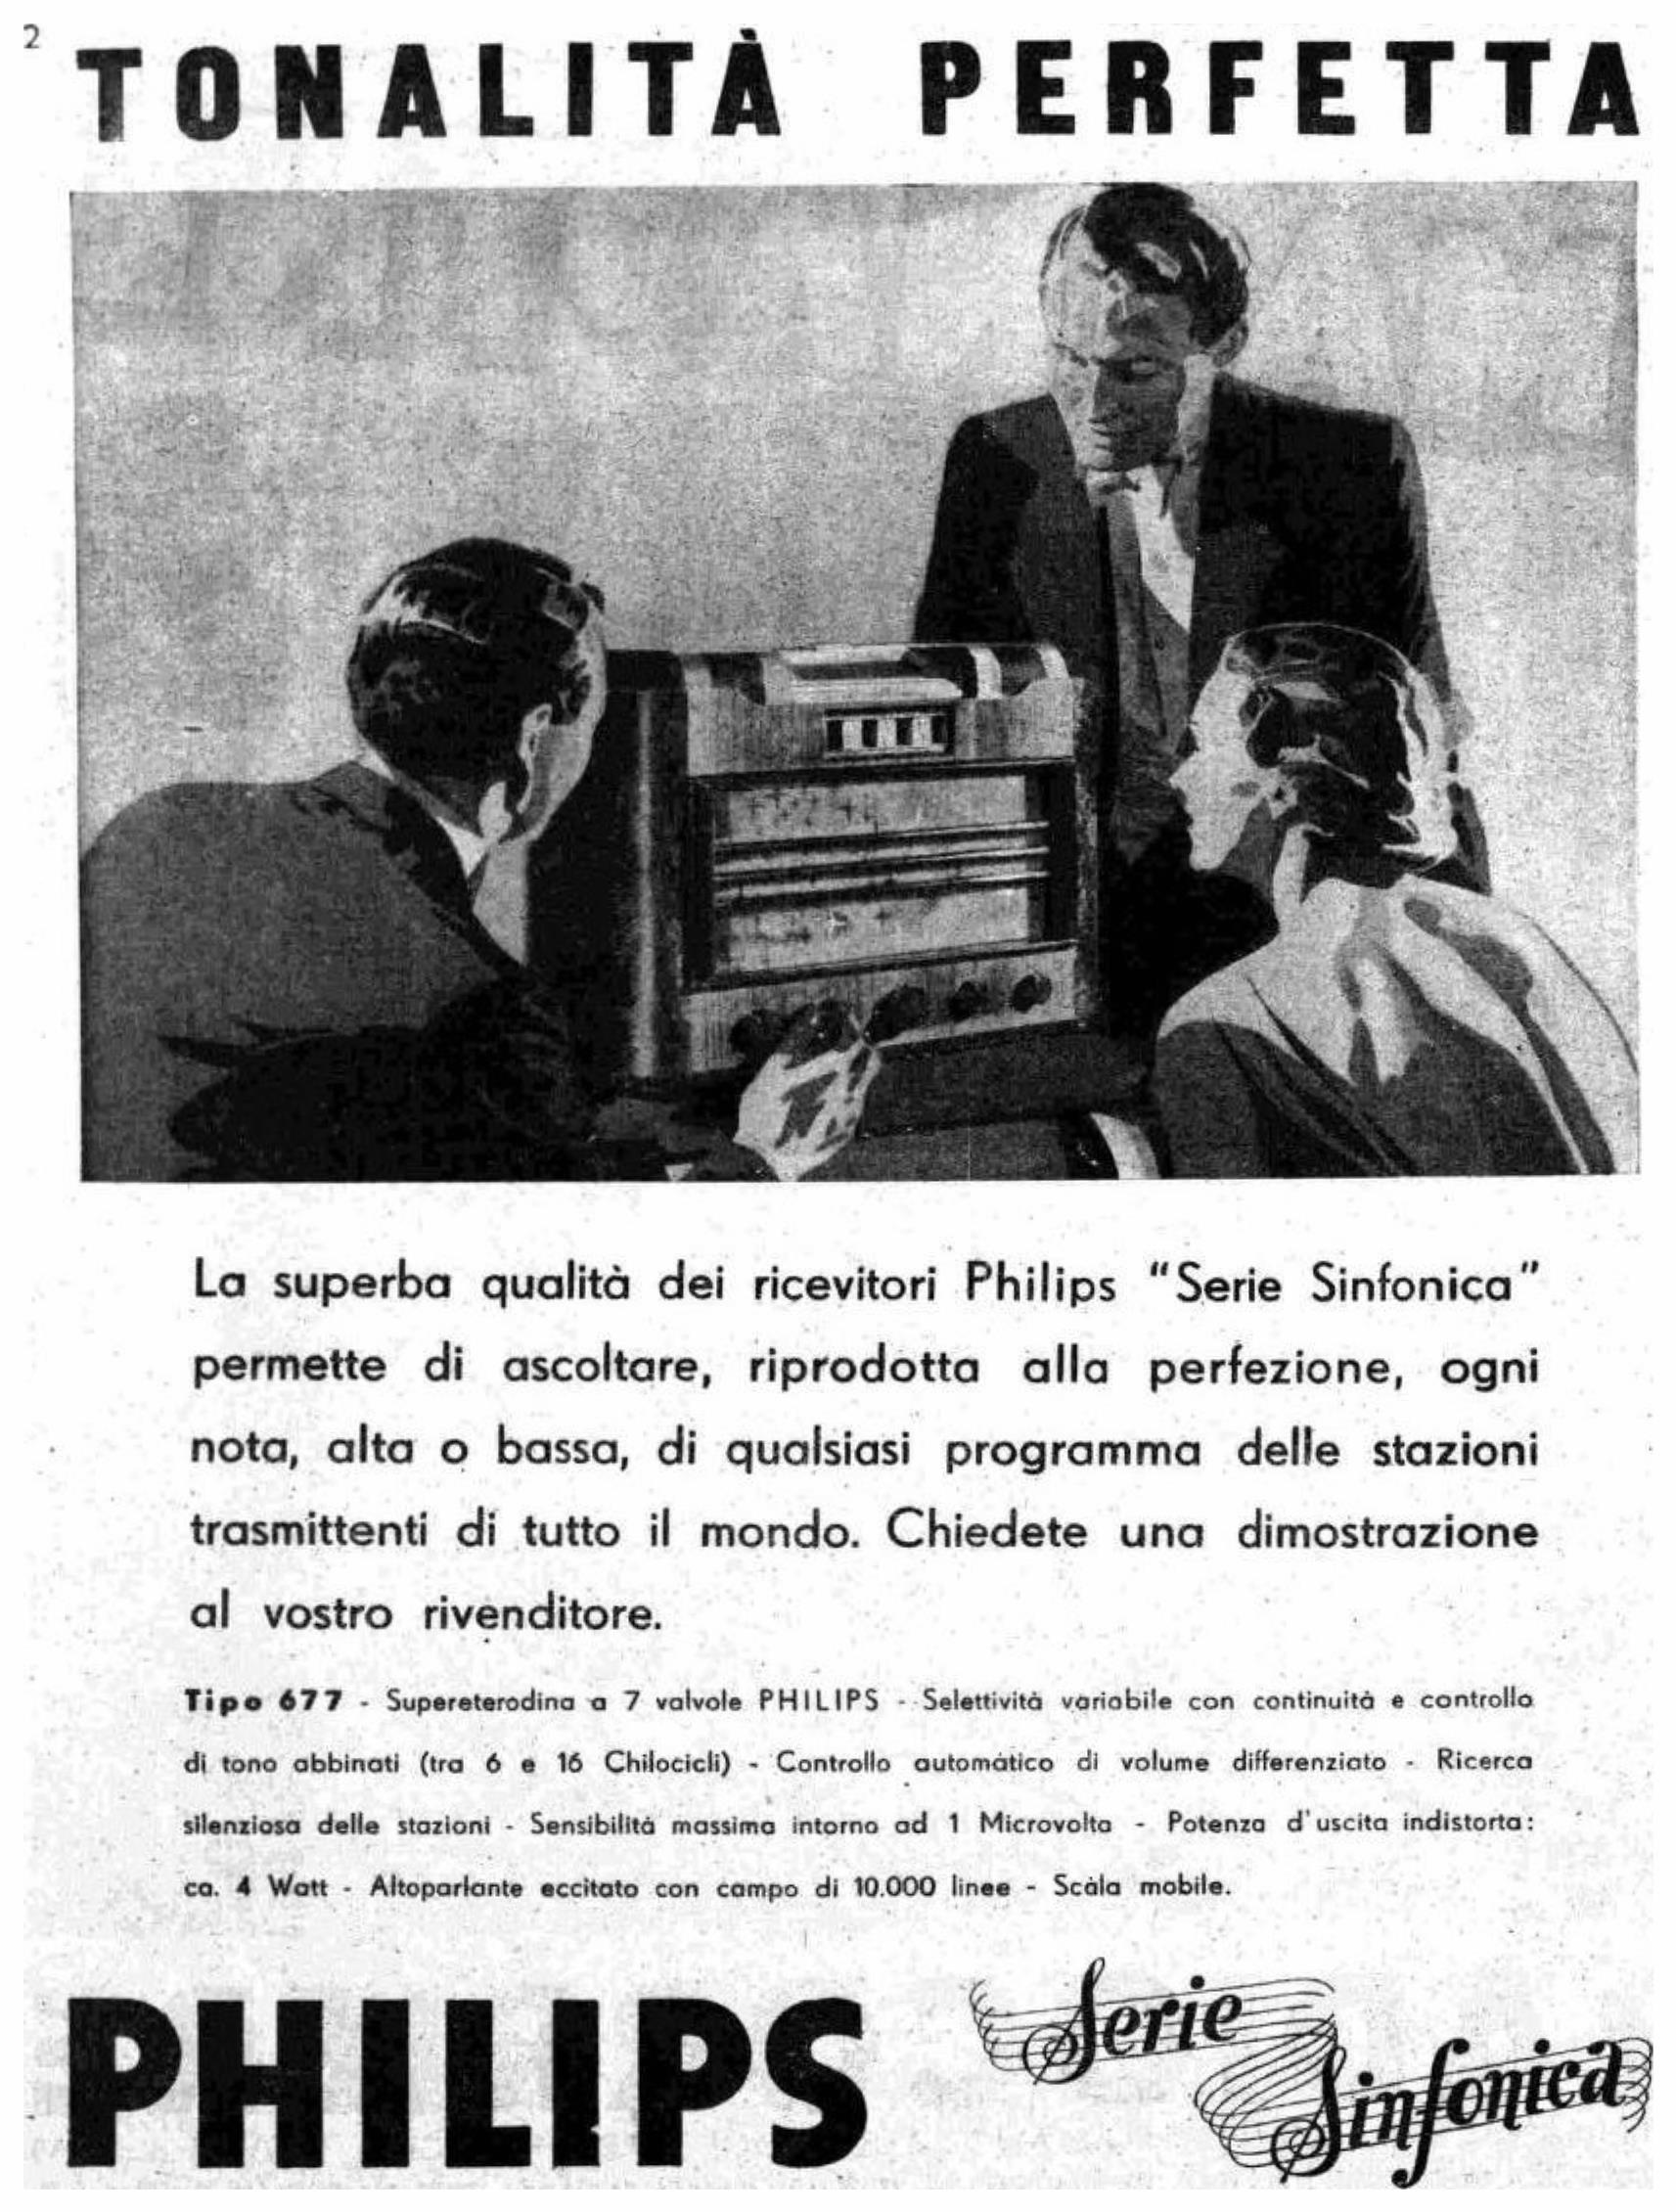 Philips 1936 2.jpg